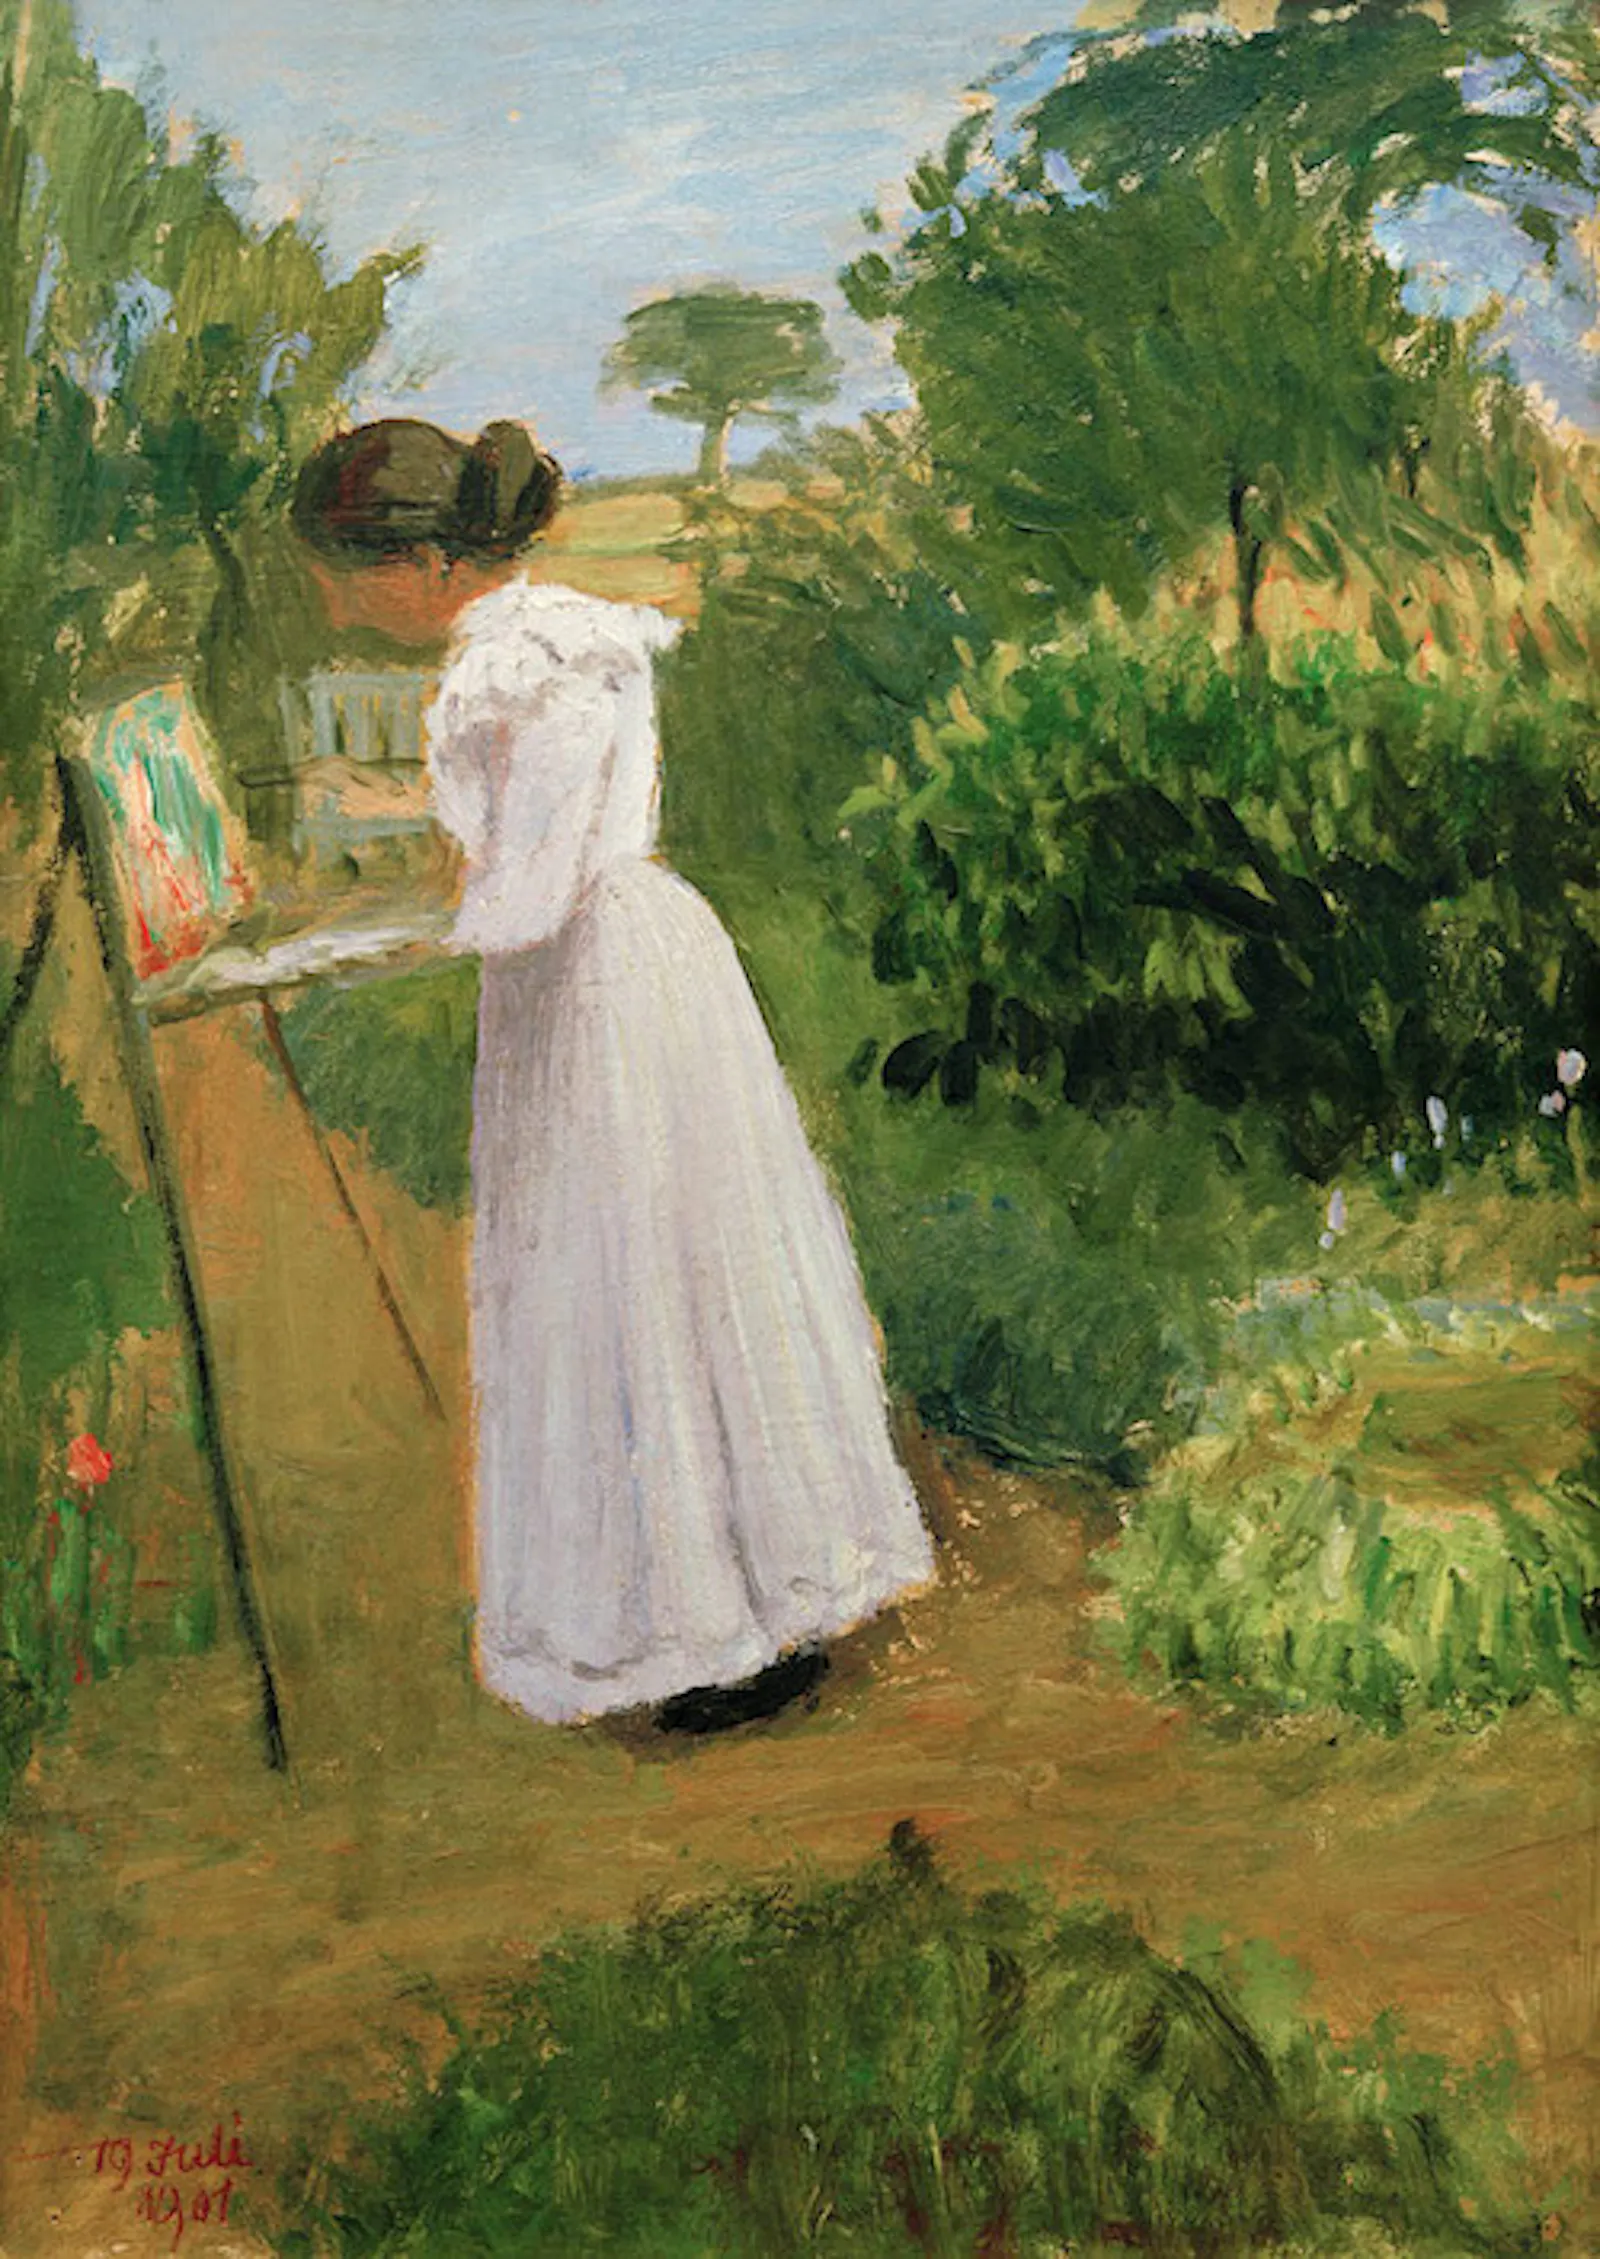 Die Künstlerin malt vor der Staffelei im Garten stehend.